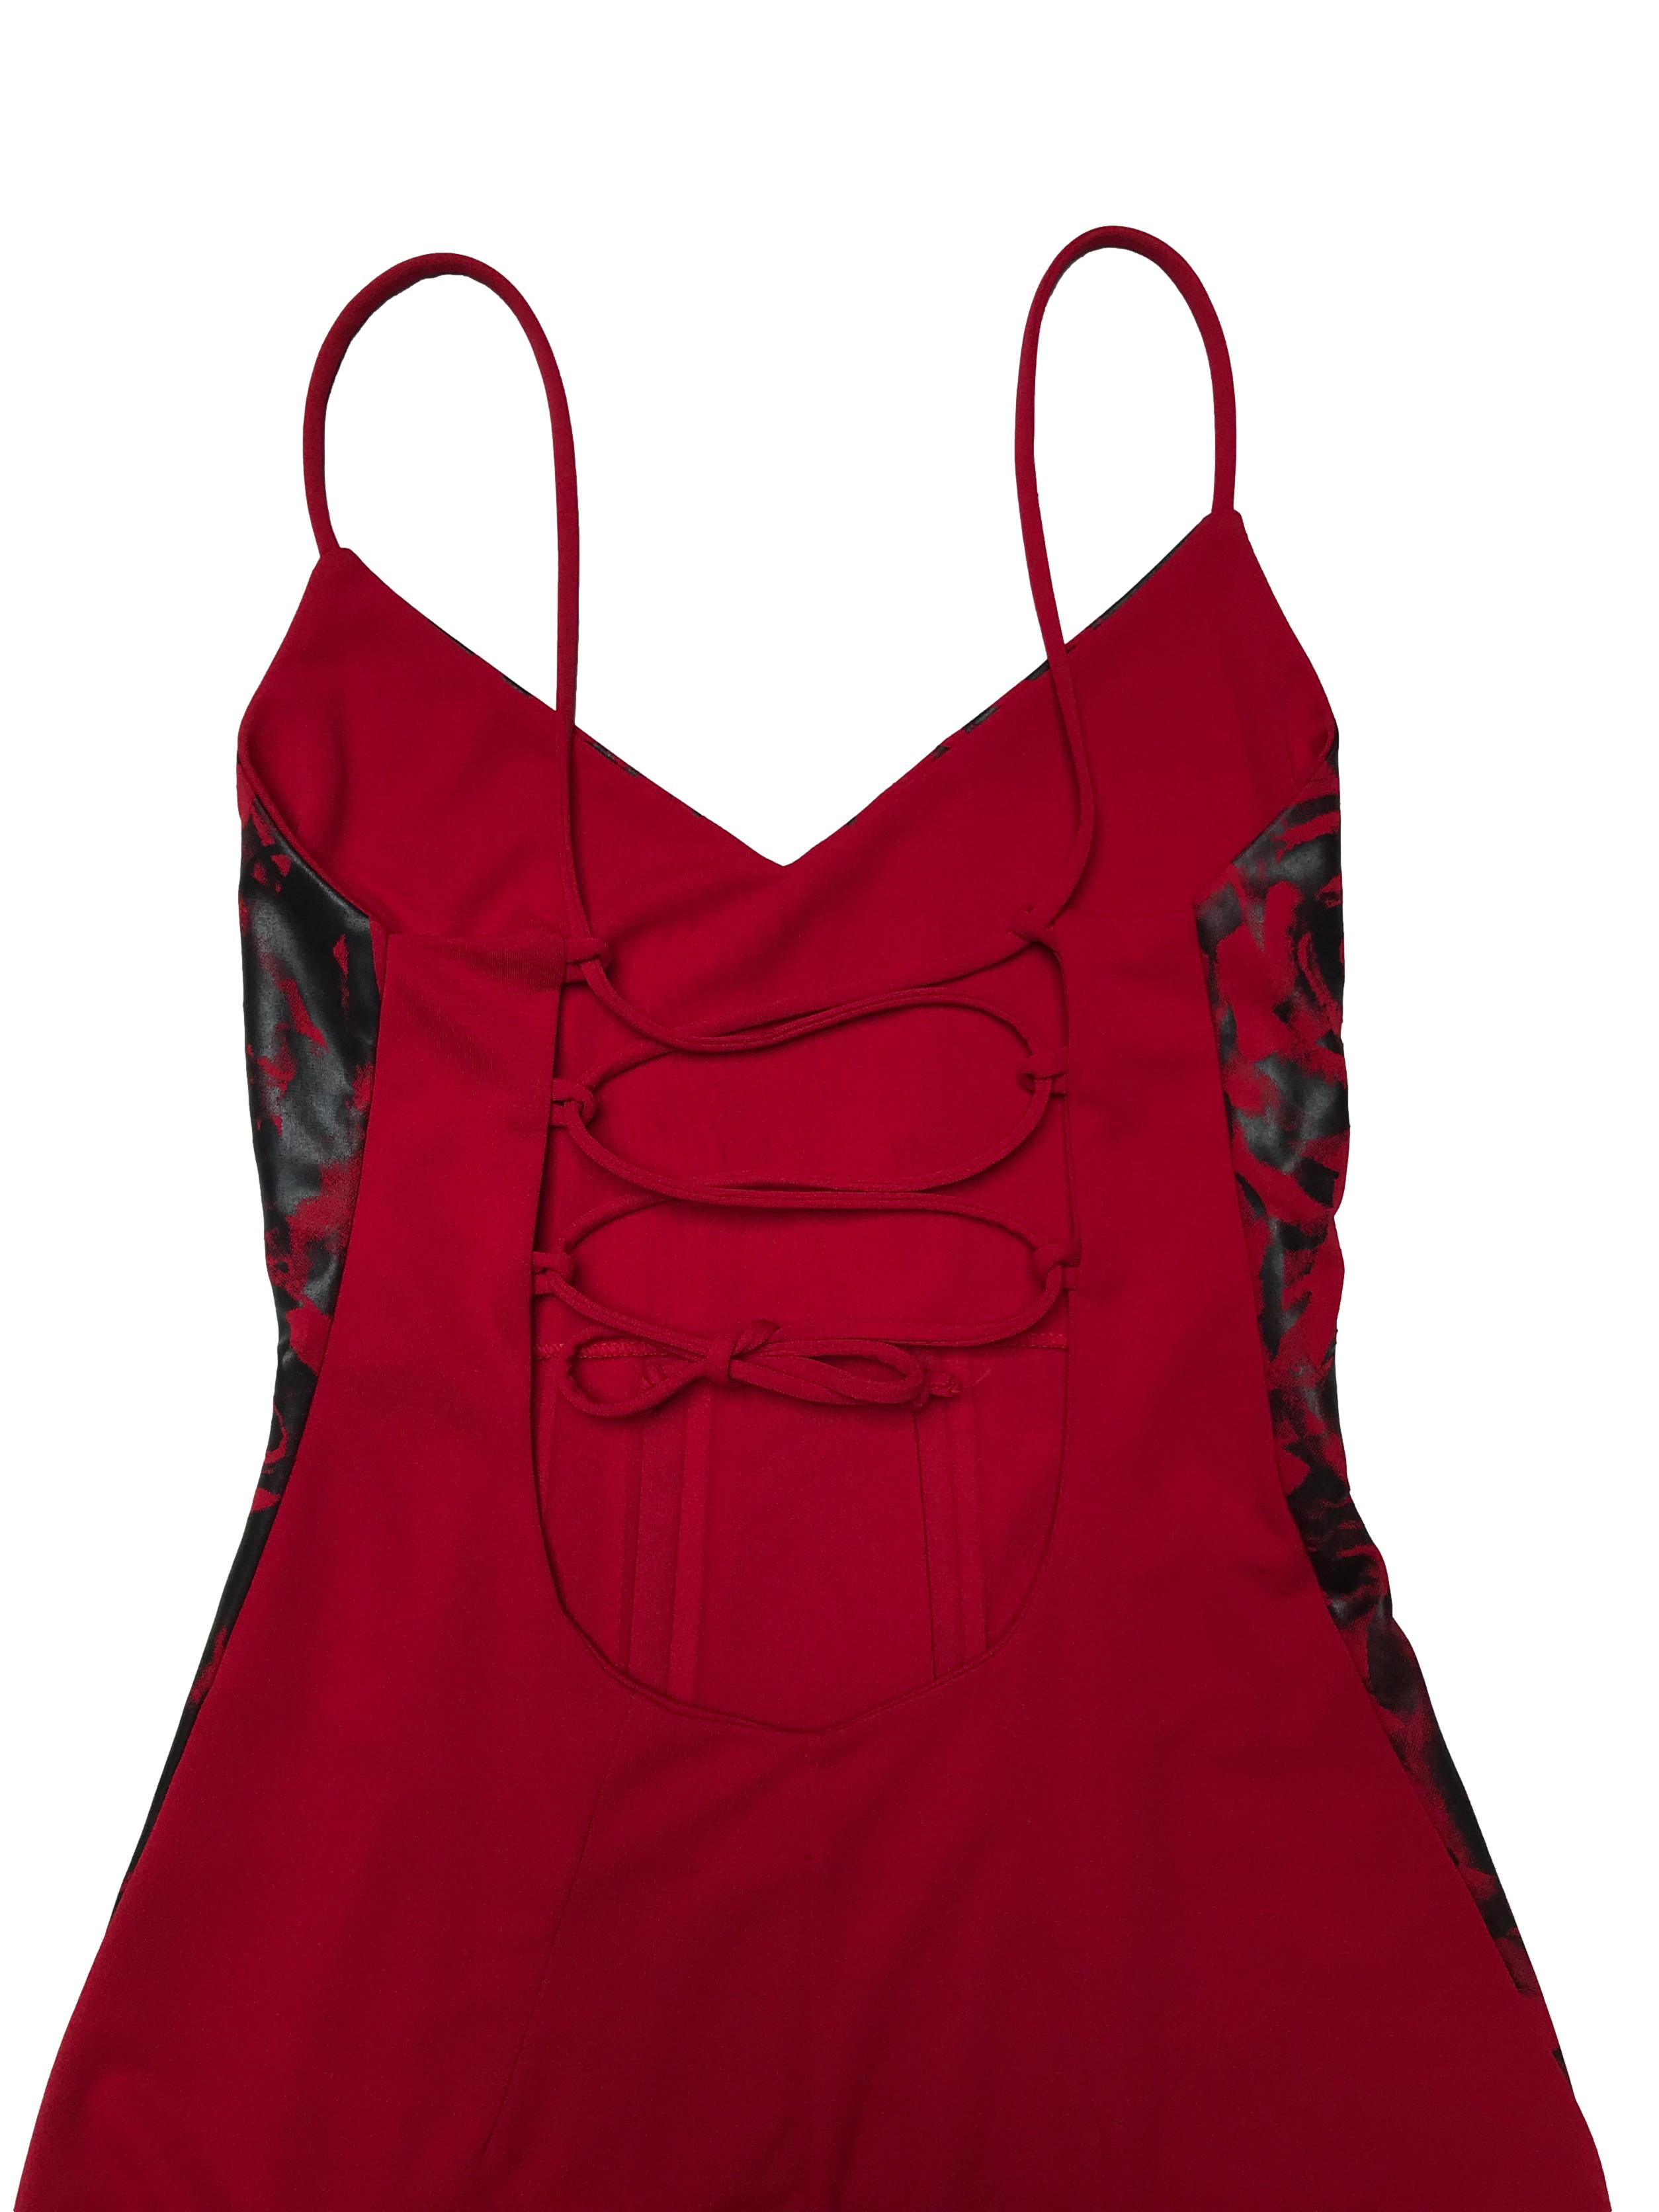 Vestido rojo con sublimado negro, basta en puntas, tiritas que se cruzan en la espalda. Busto hasta 90cm Largo desde pecho 75 - 95cm